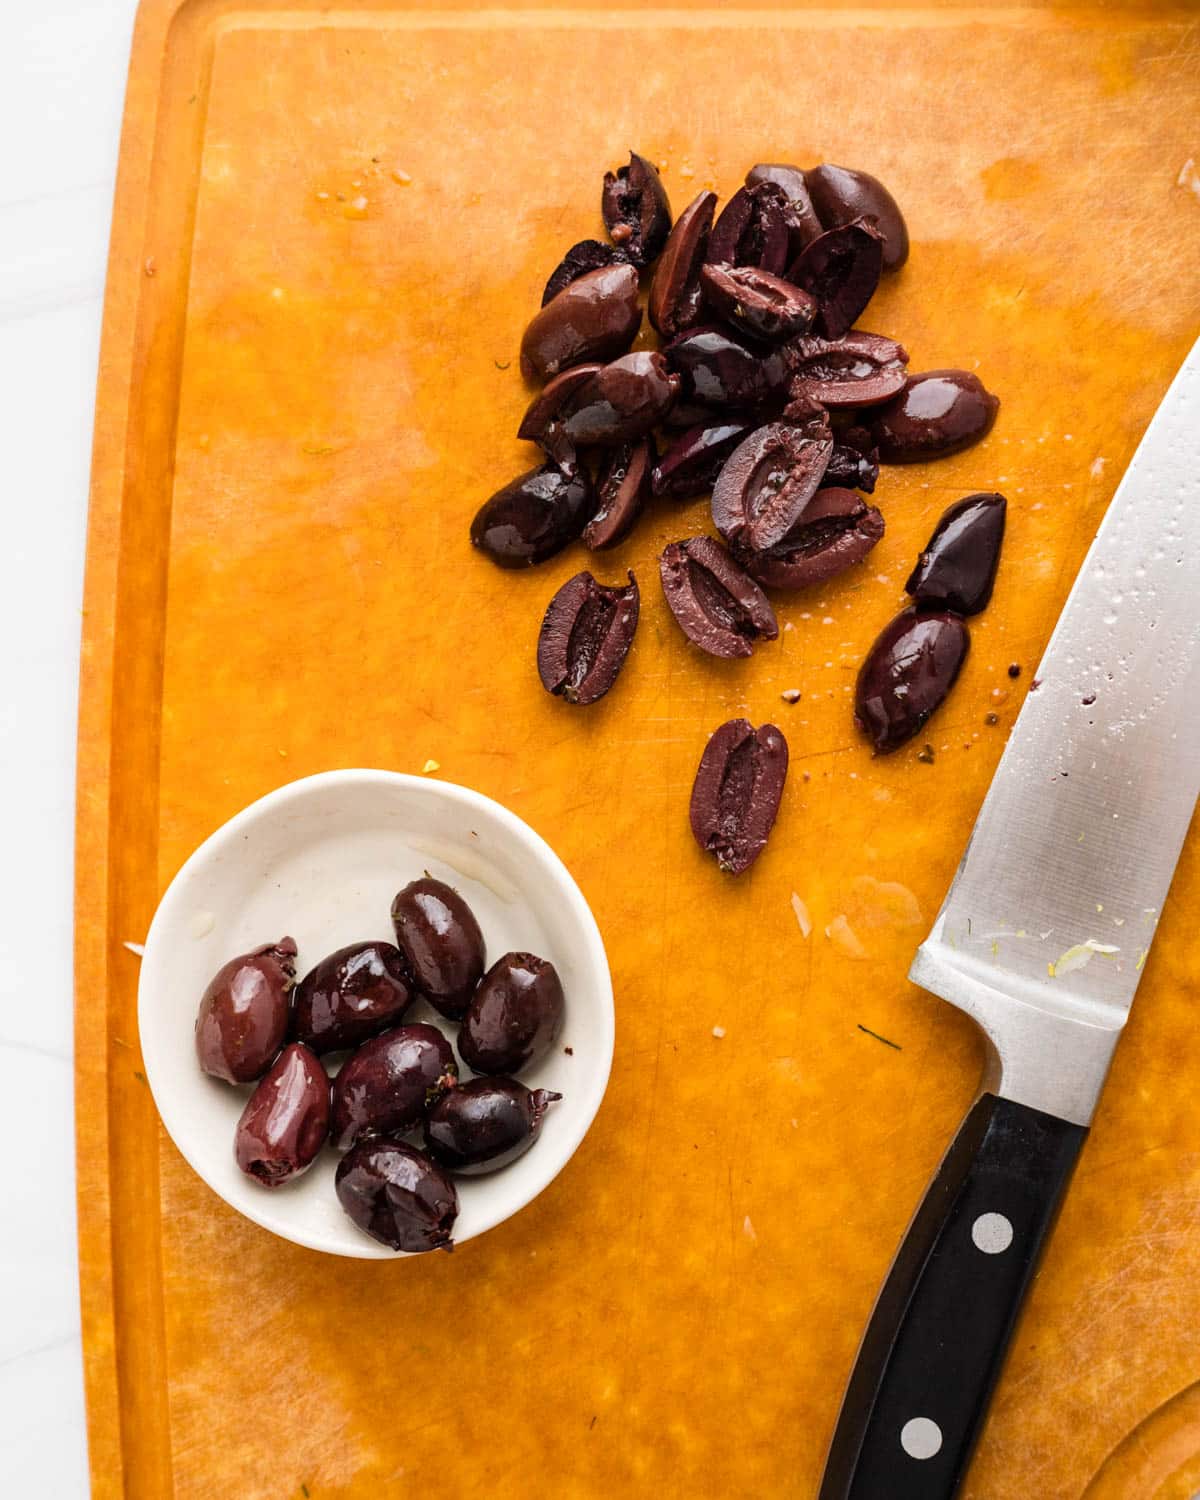 Pitting and slicing kalamata olives.